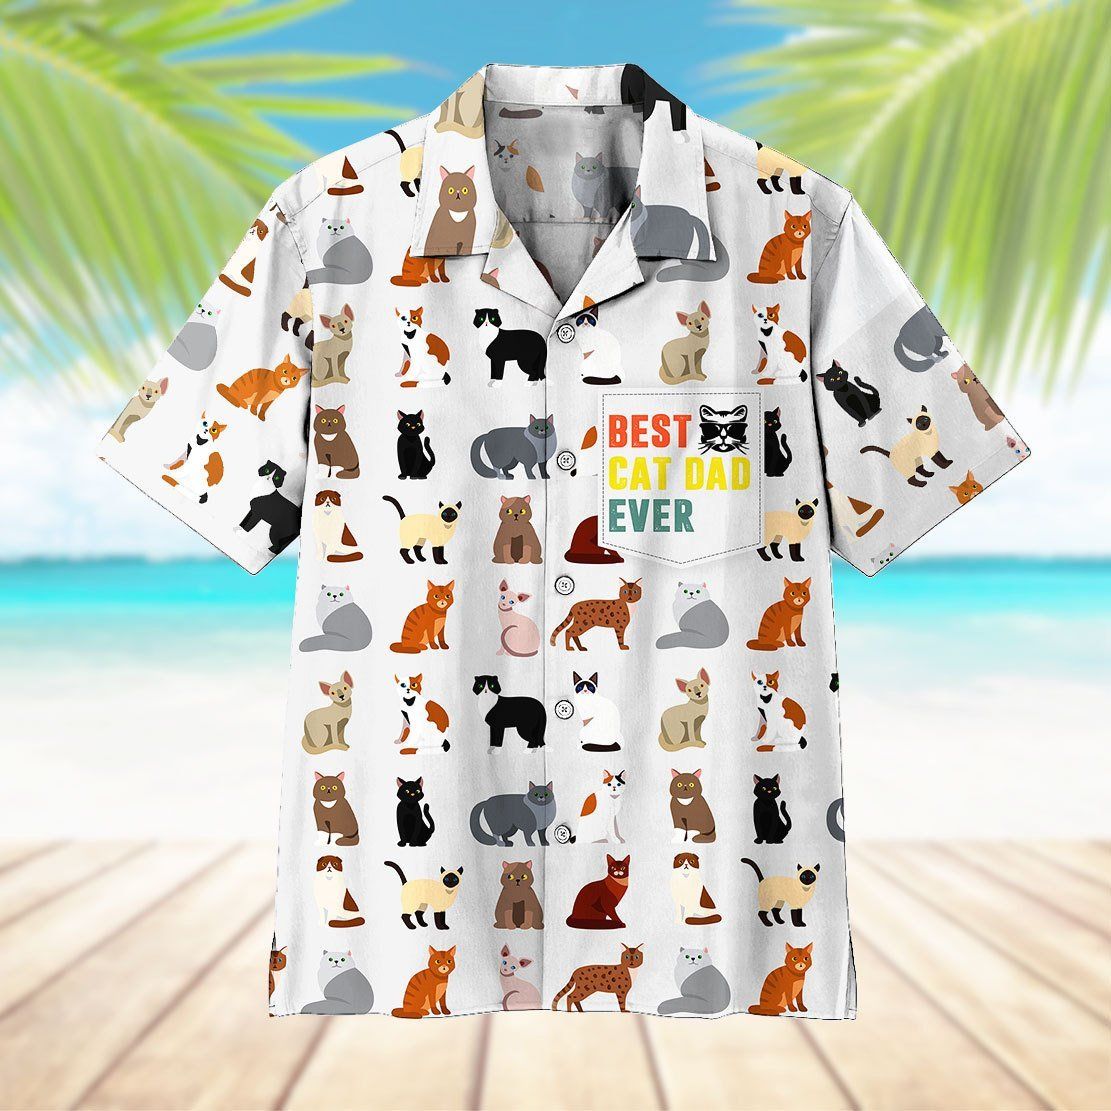 Gearhumans 3D Best Cat Dad Ever Hawaii Shirt